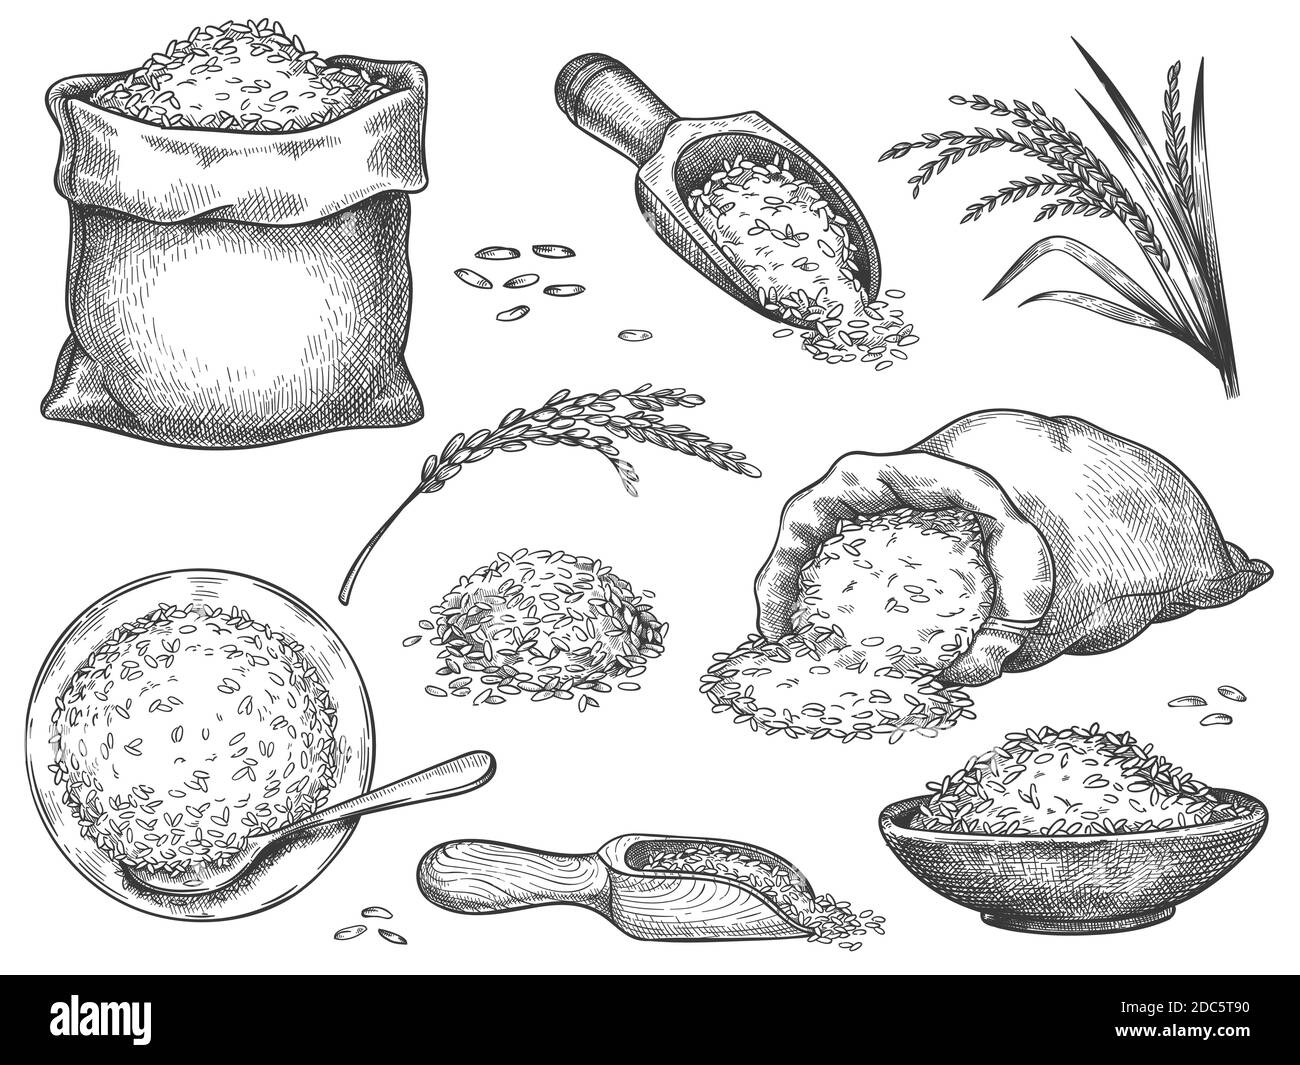 Von Hand gezogenes Reismehl. Retro-Gravur Getreidespikelets von Weizen, Roggen, Gerste, Basmati oder Jasmin Reis. Körner in Sack und Schaufel Vektor-Set Stock Vektor